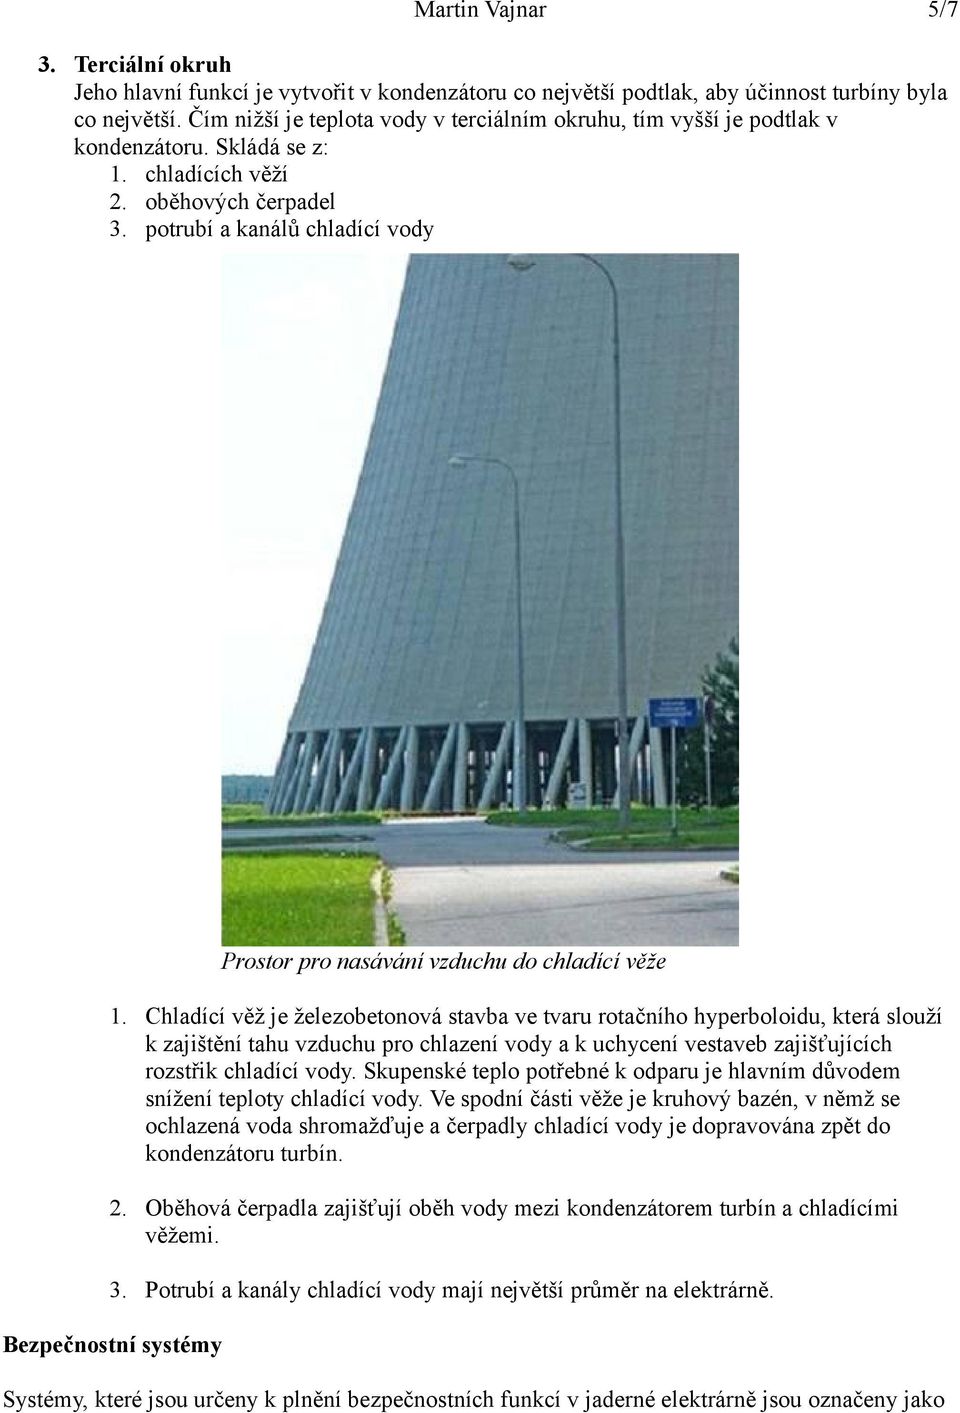 Chladící věž je železobetonová stavba ve tvaru rotačního hyperboloidu, která slouží k zajištění tahu vzduchu pro chlazení vody a k uchycení vestaveb zajišťujících rozstřik chladící vody.